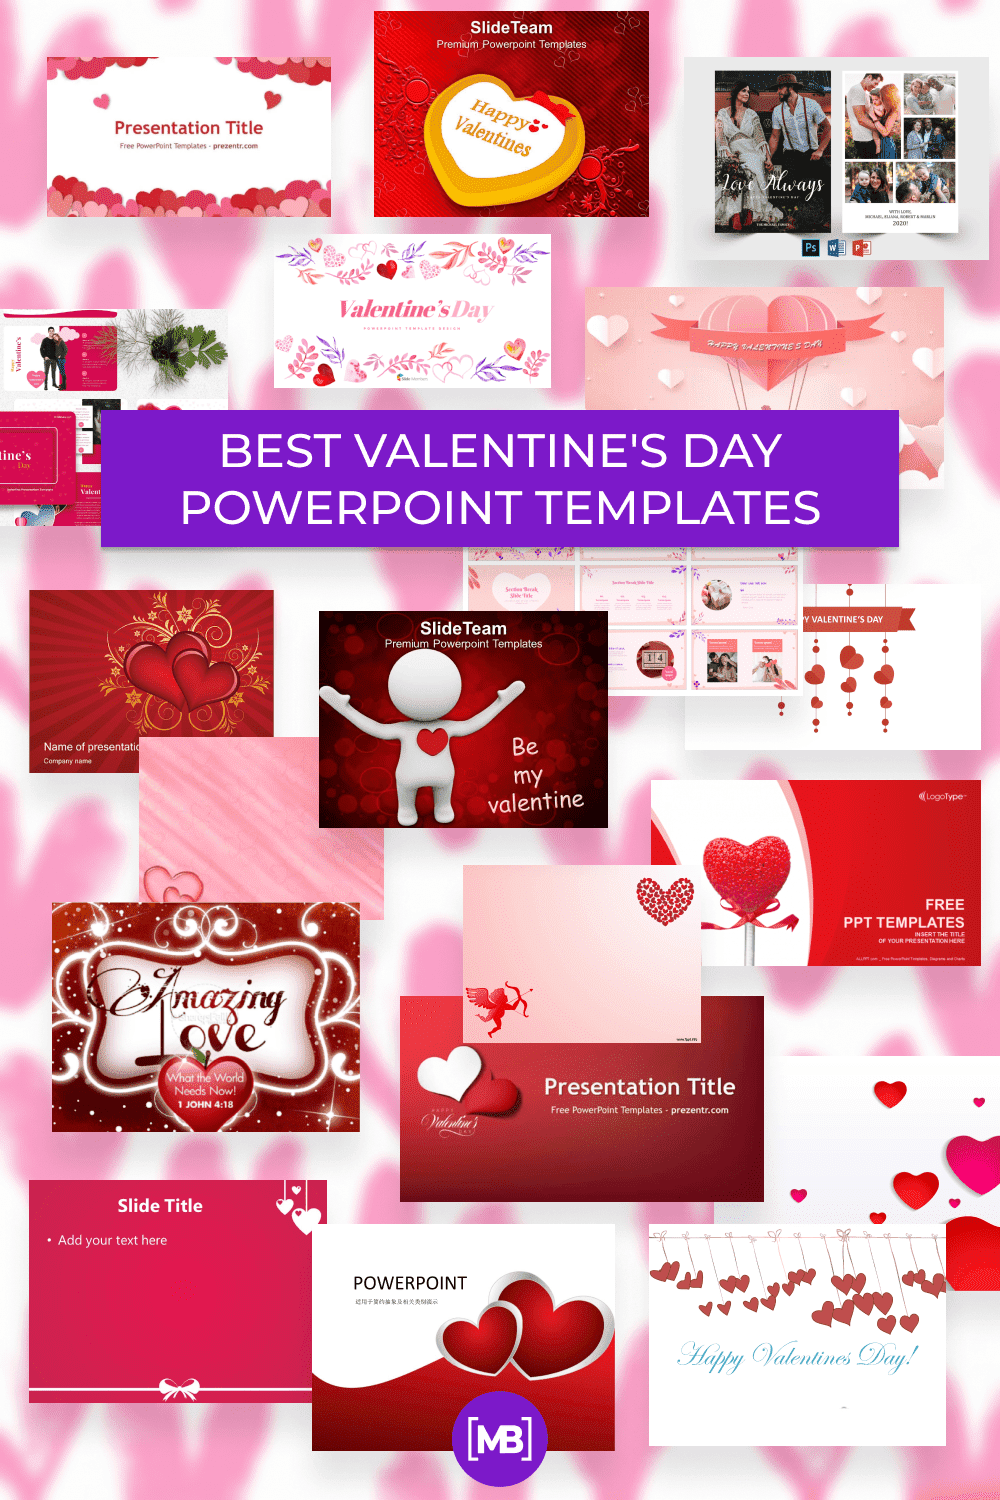 Valentine's Day PowerPoint Templates Pinterest.